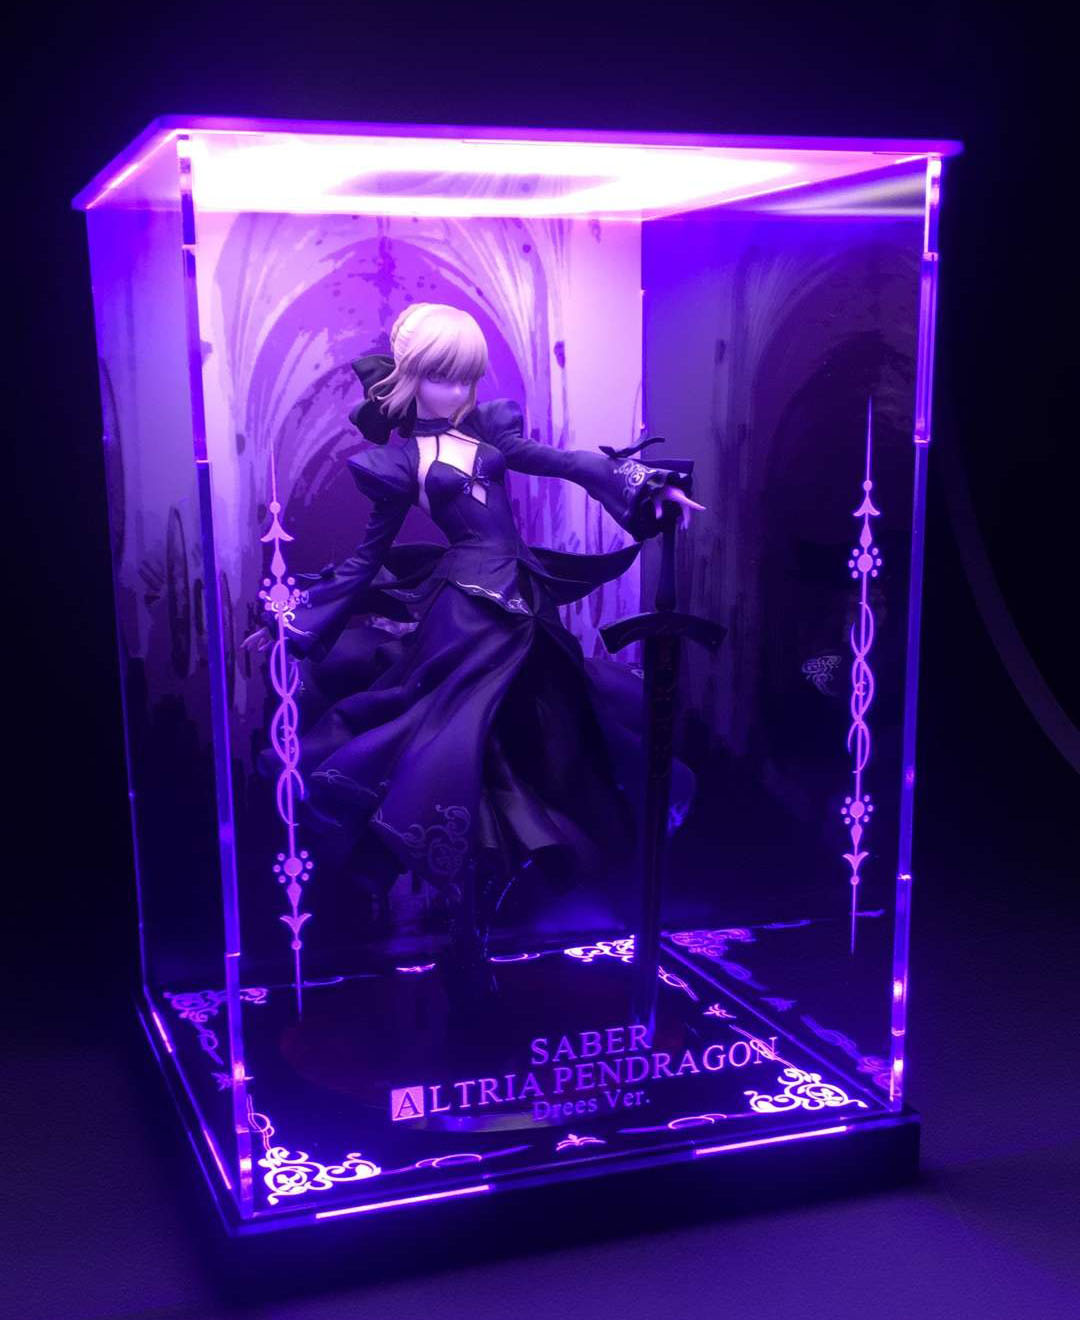 Fate セイバーアルトリア ペンドラゴン ドレスVer. & 専用展示ケース-